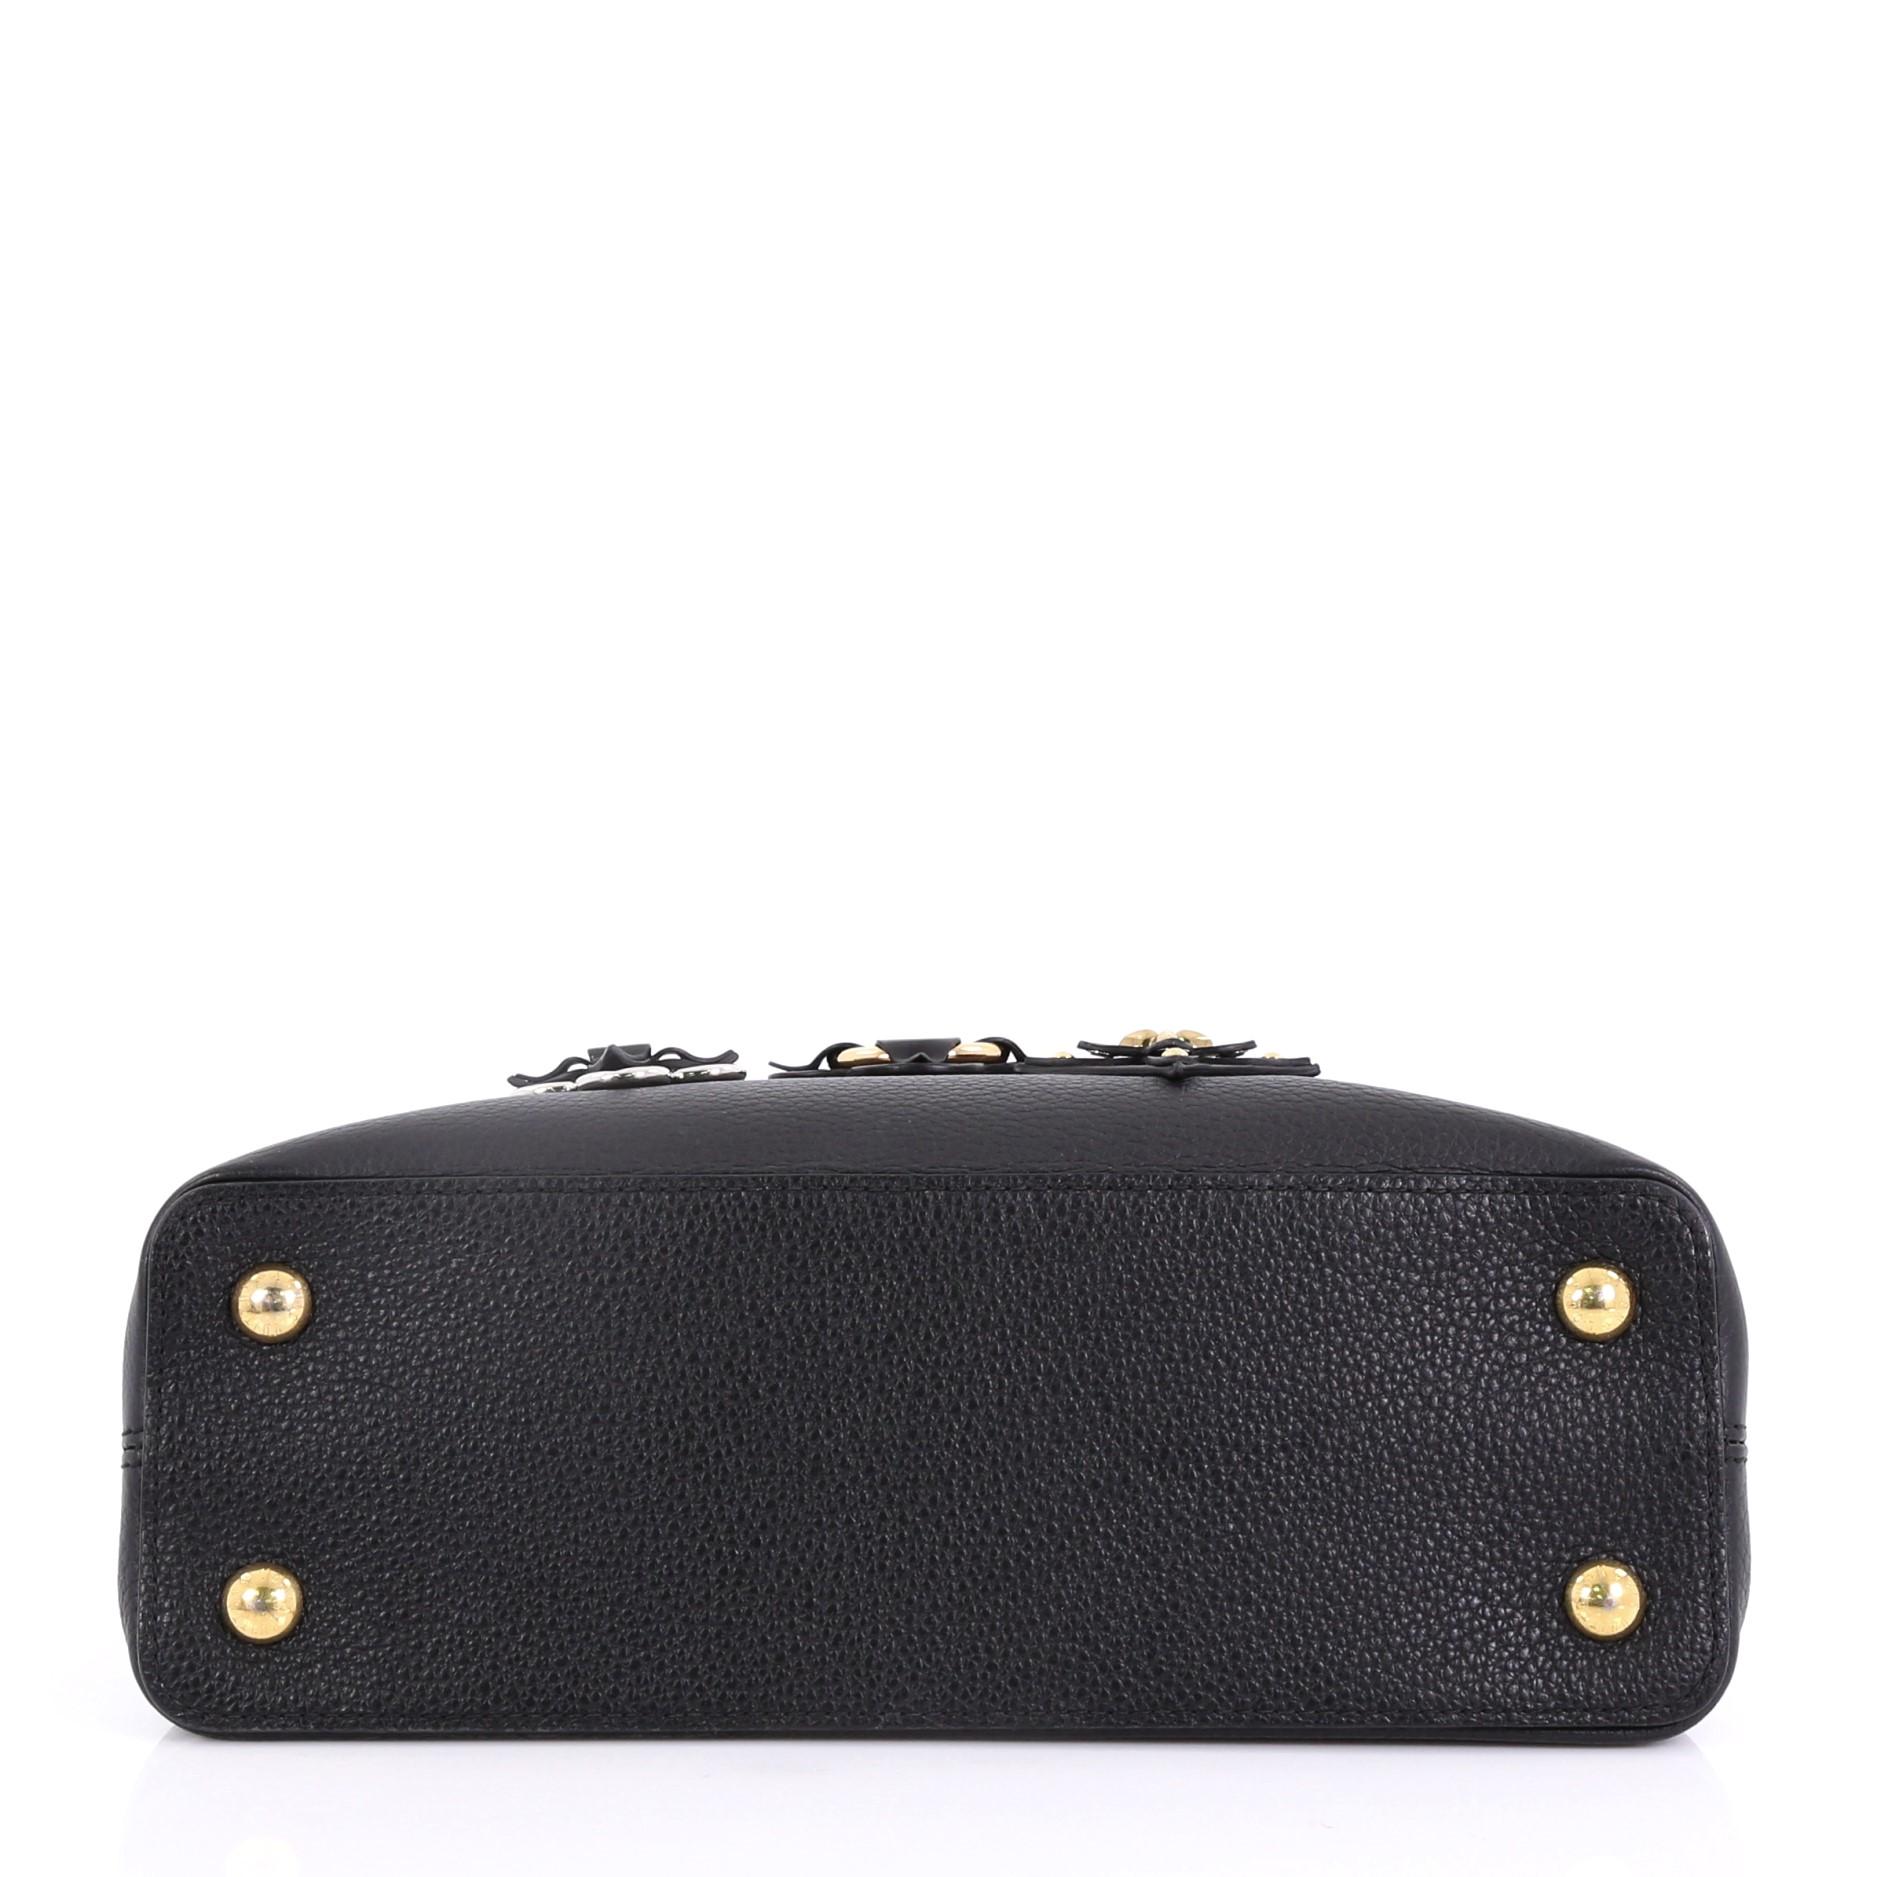 Black Louis Vuitton Capucines Handbag Limited Edition Mechanical Flowers Leather PM